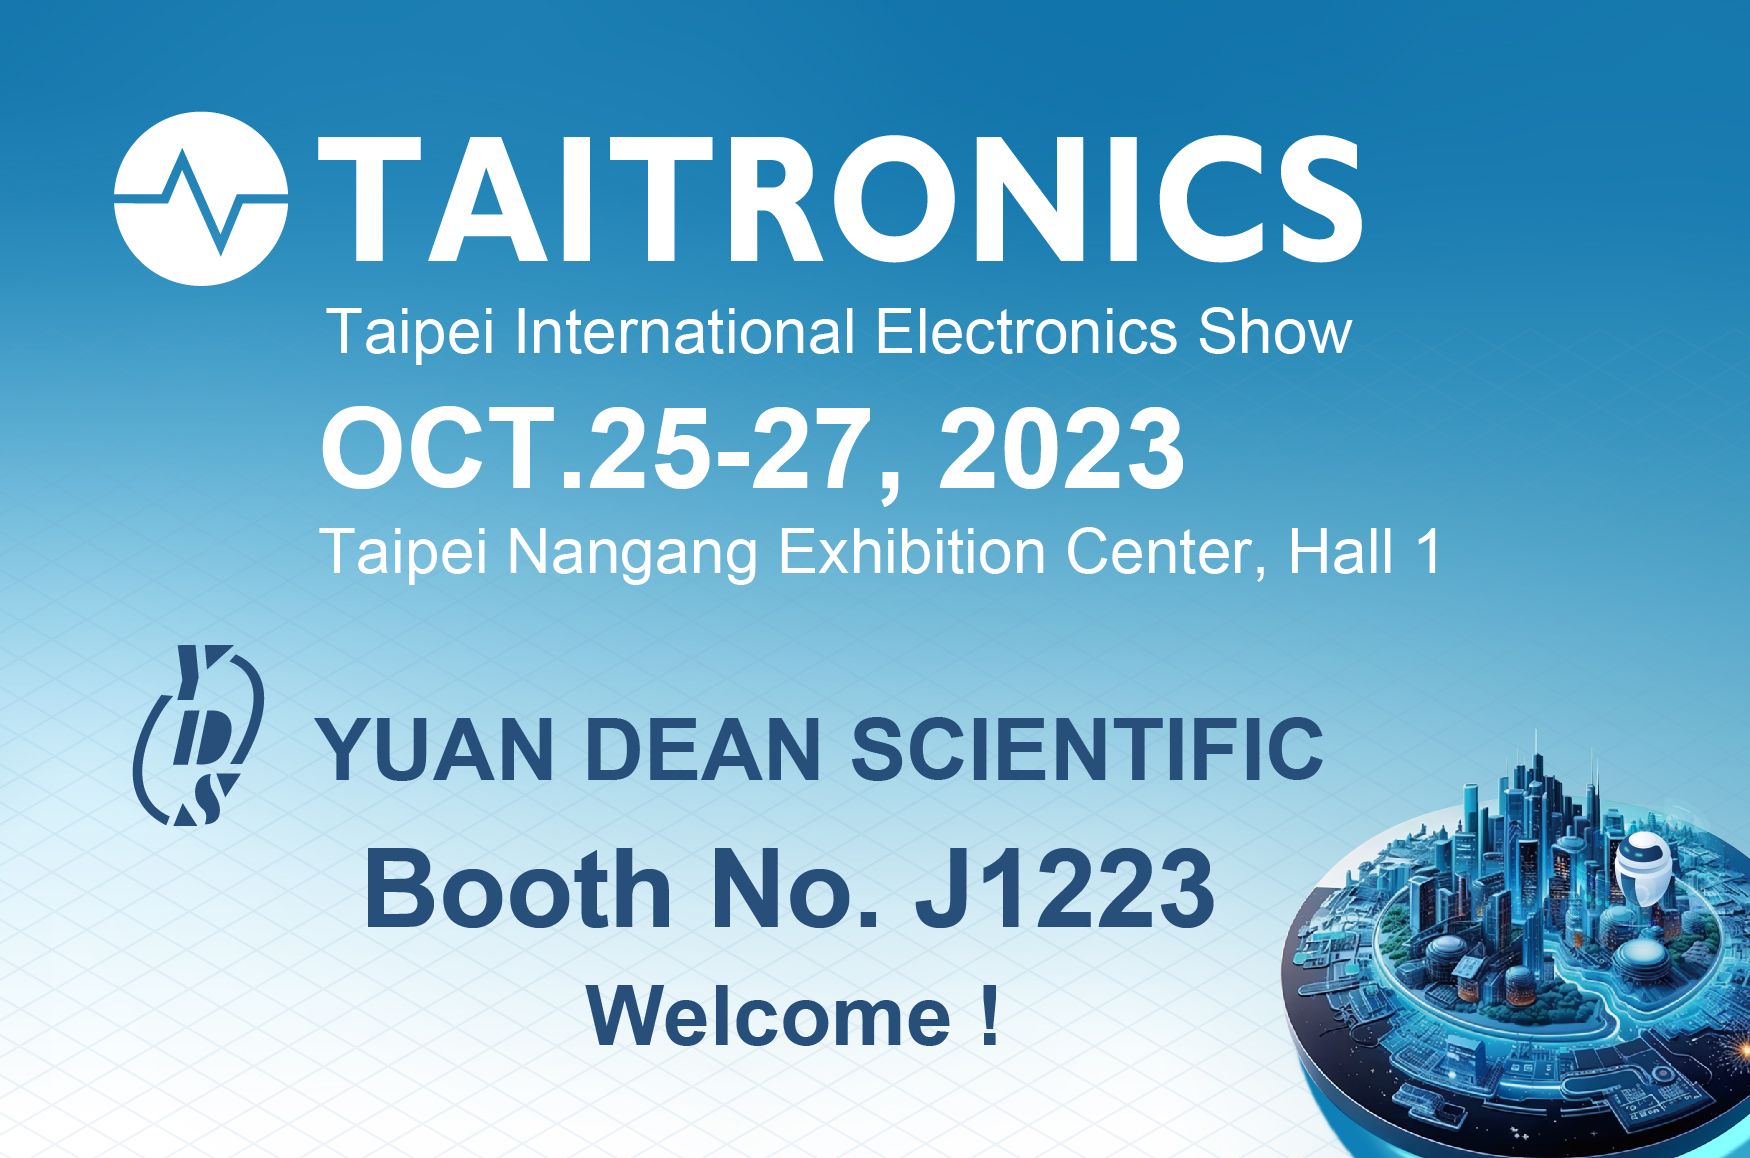 2023 TAITRONICS- आपका स्वागत है YUAN DEAN के बूथ पर जाने के लिए- J1223